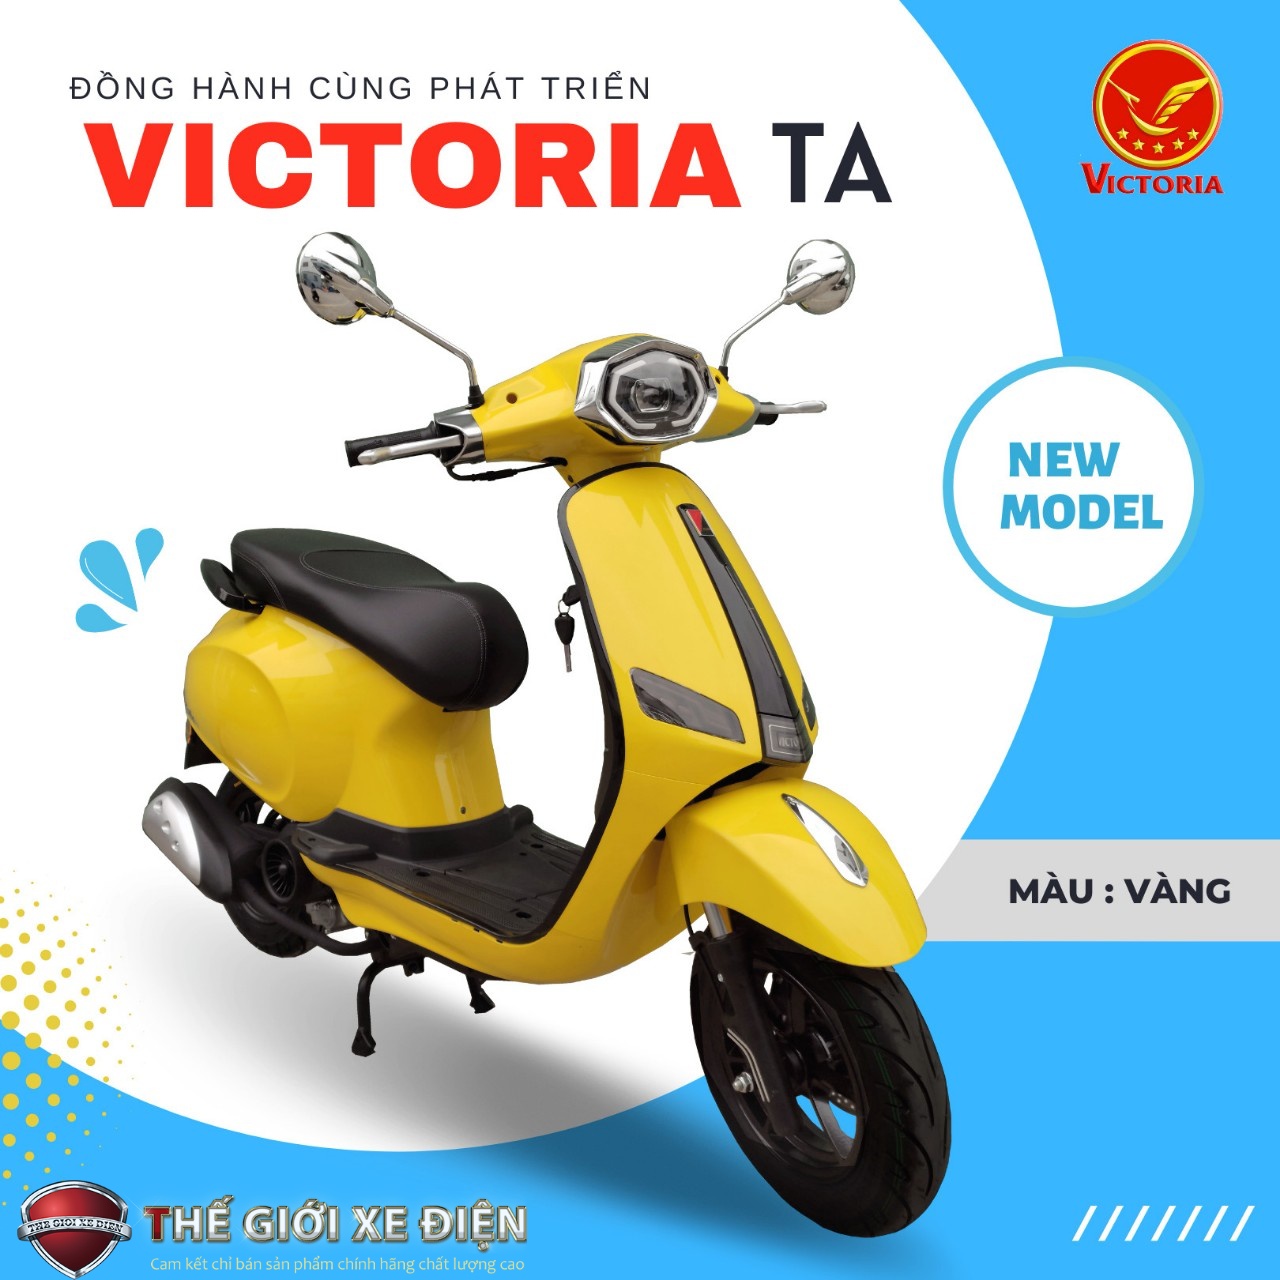 Lưu ý về gương chiếu hậu xe tay ga 50cc Victoria TA Việt Nhật 2022 để luôn an toàn & không bị phạt